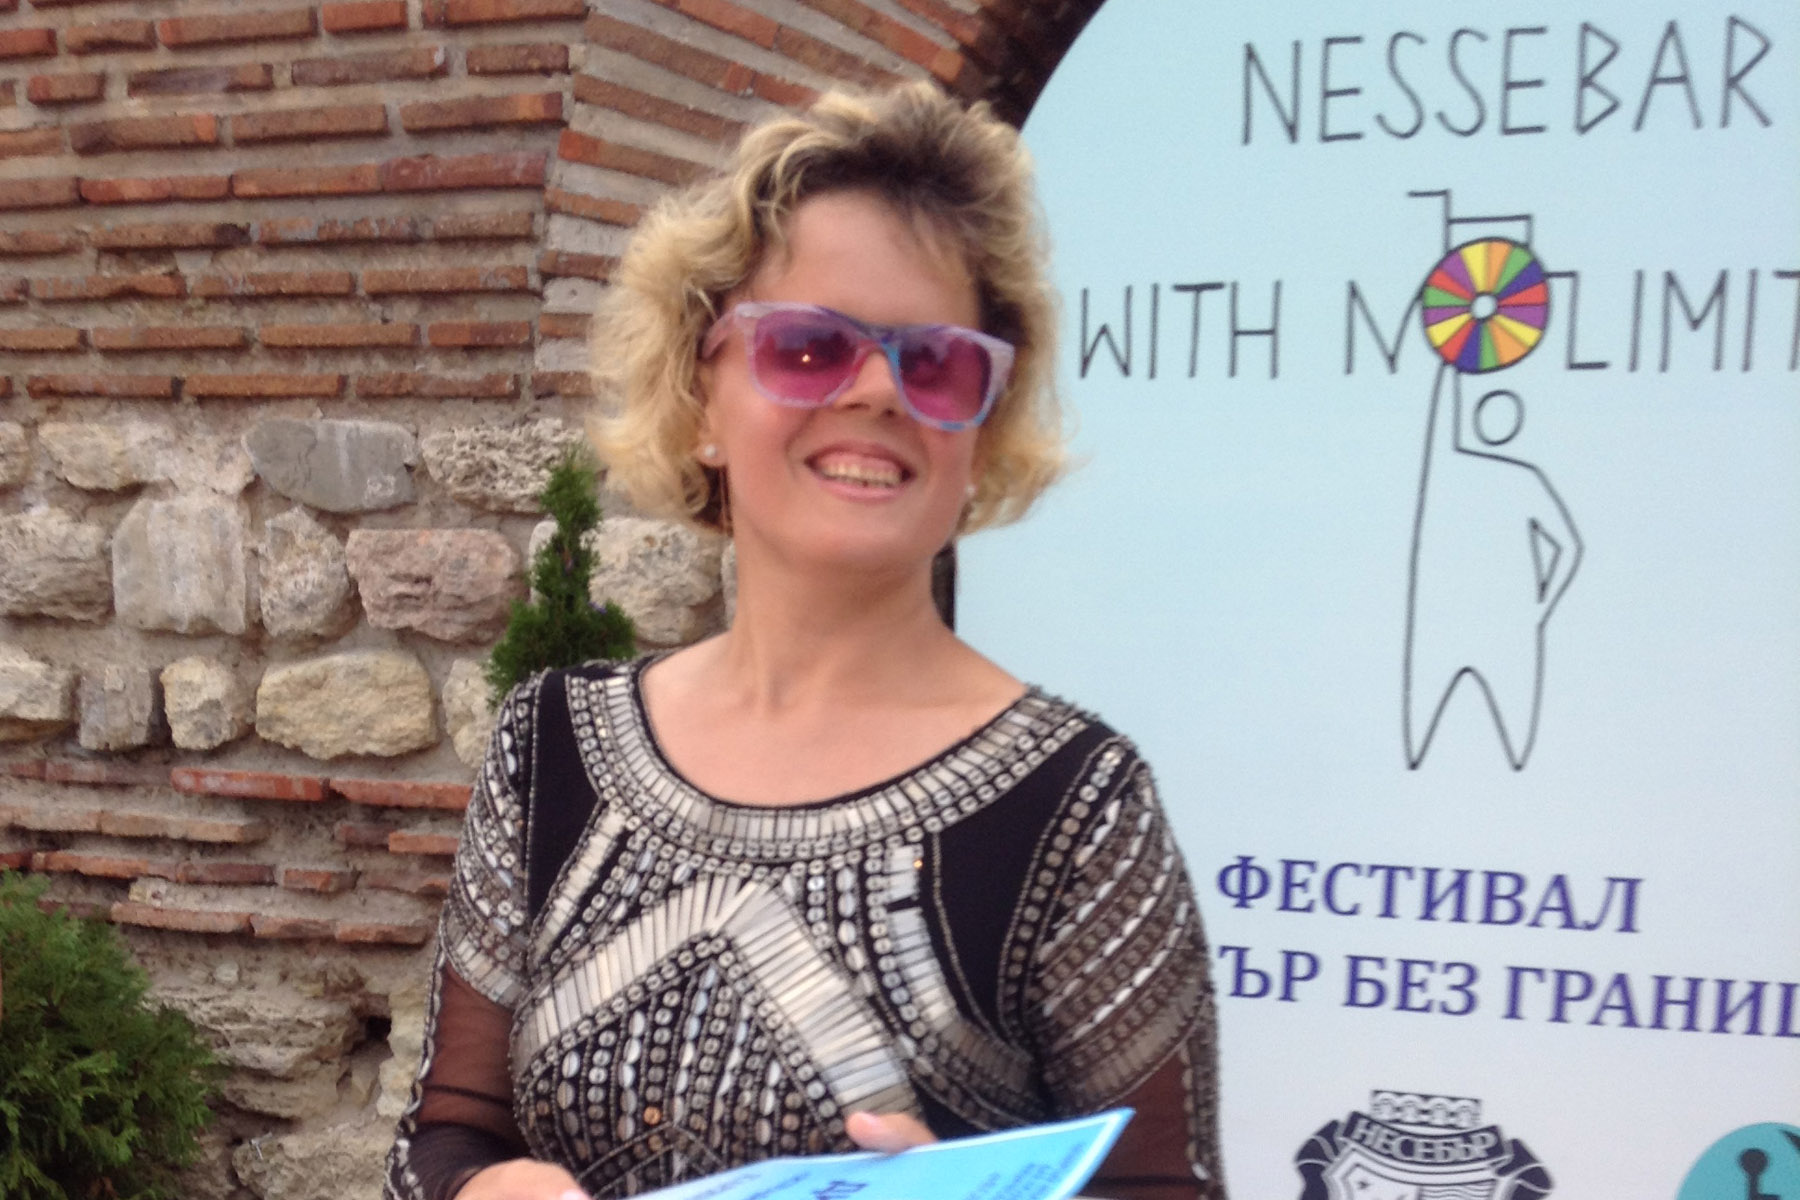 Брянская певица выиграла конкурс в древнем болгарском Несебре